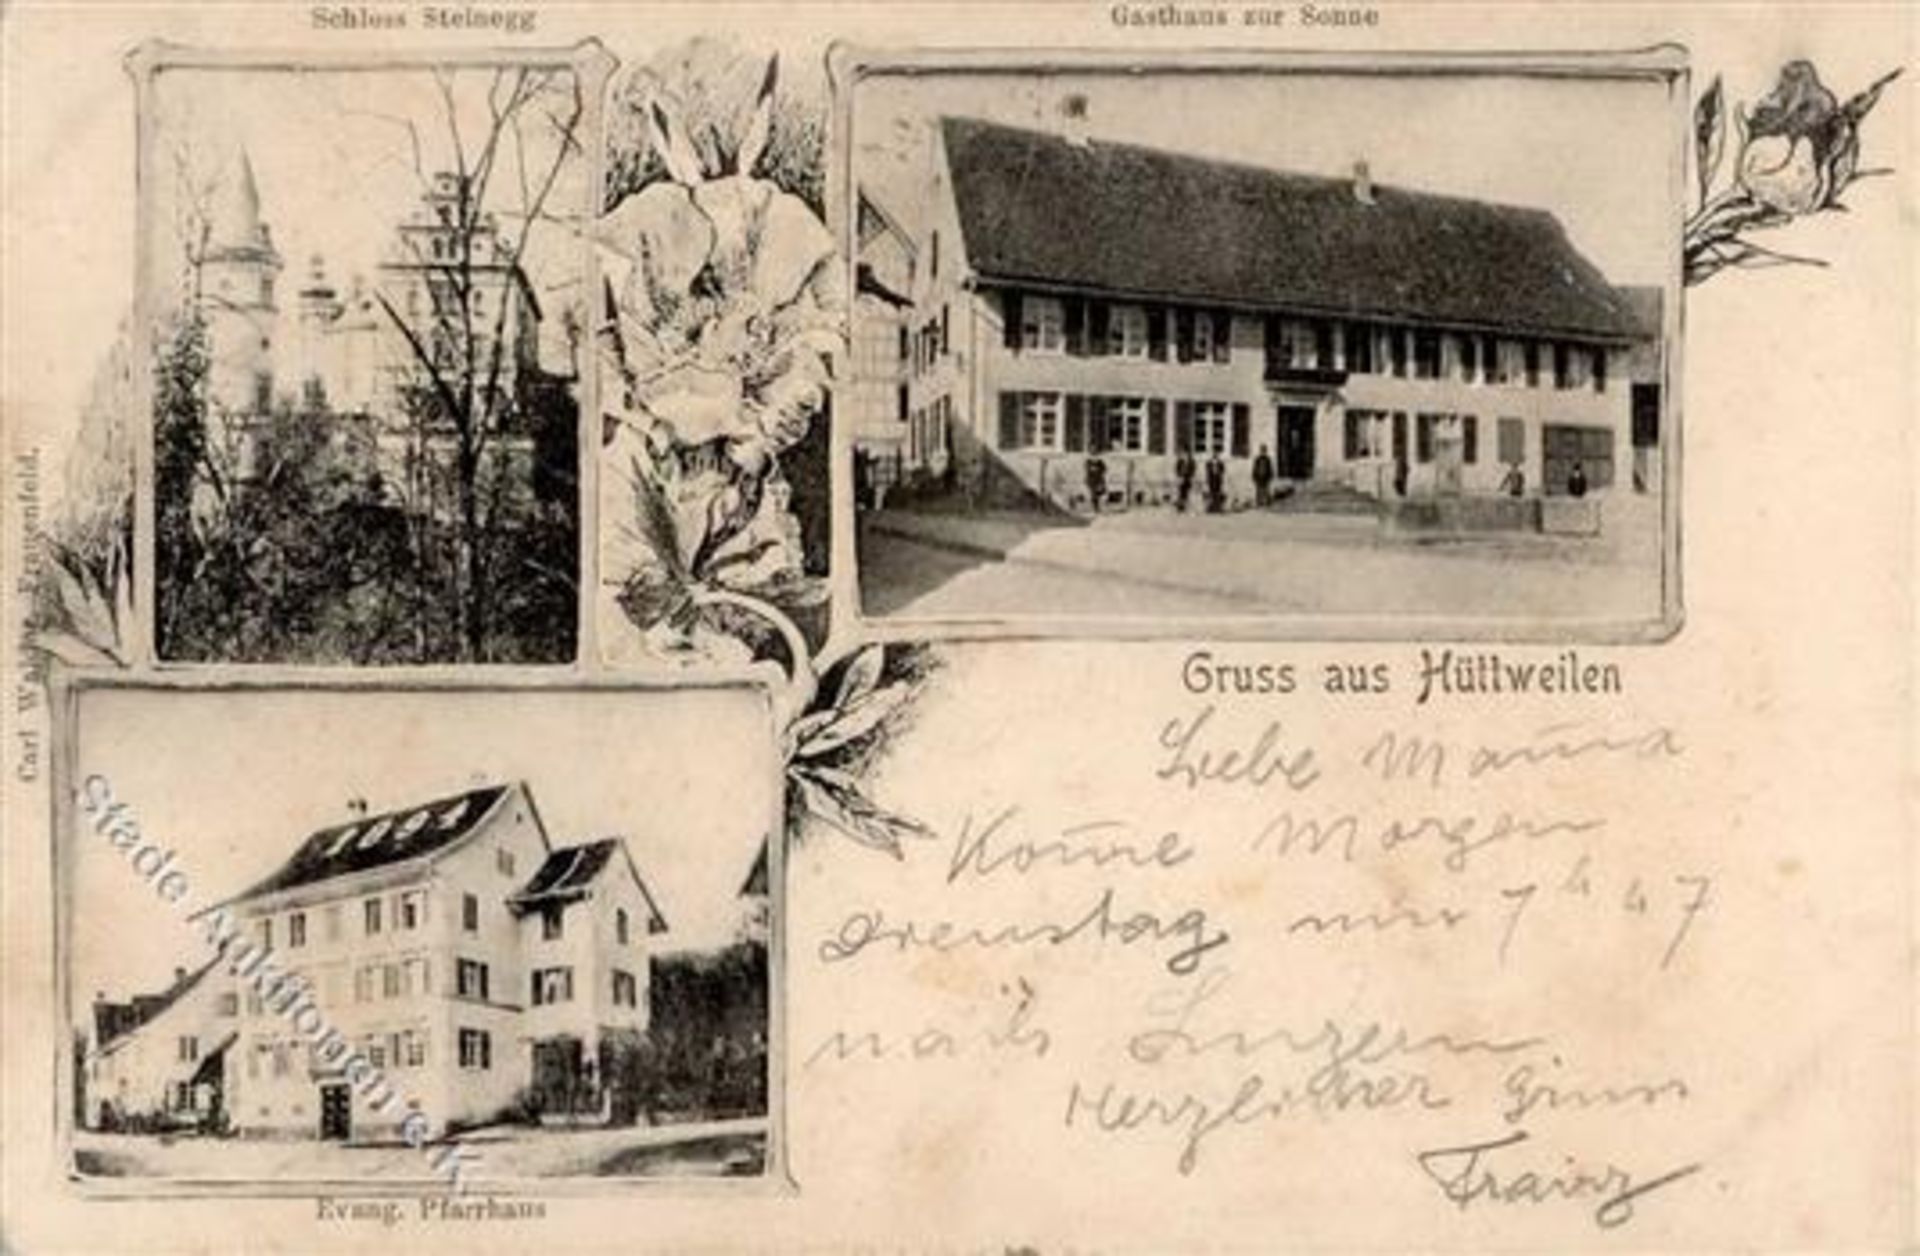 Hüttwilen (8536) Schweiz Schloss Steinegg Gasthaus zur Sonne 1902 I-Dieses Los wird in einer